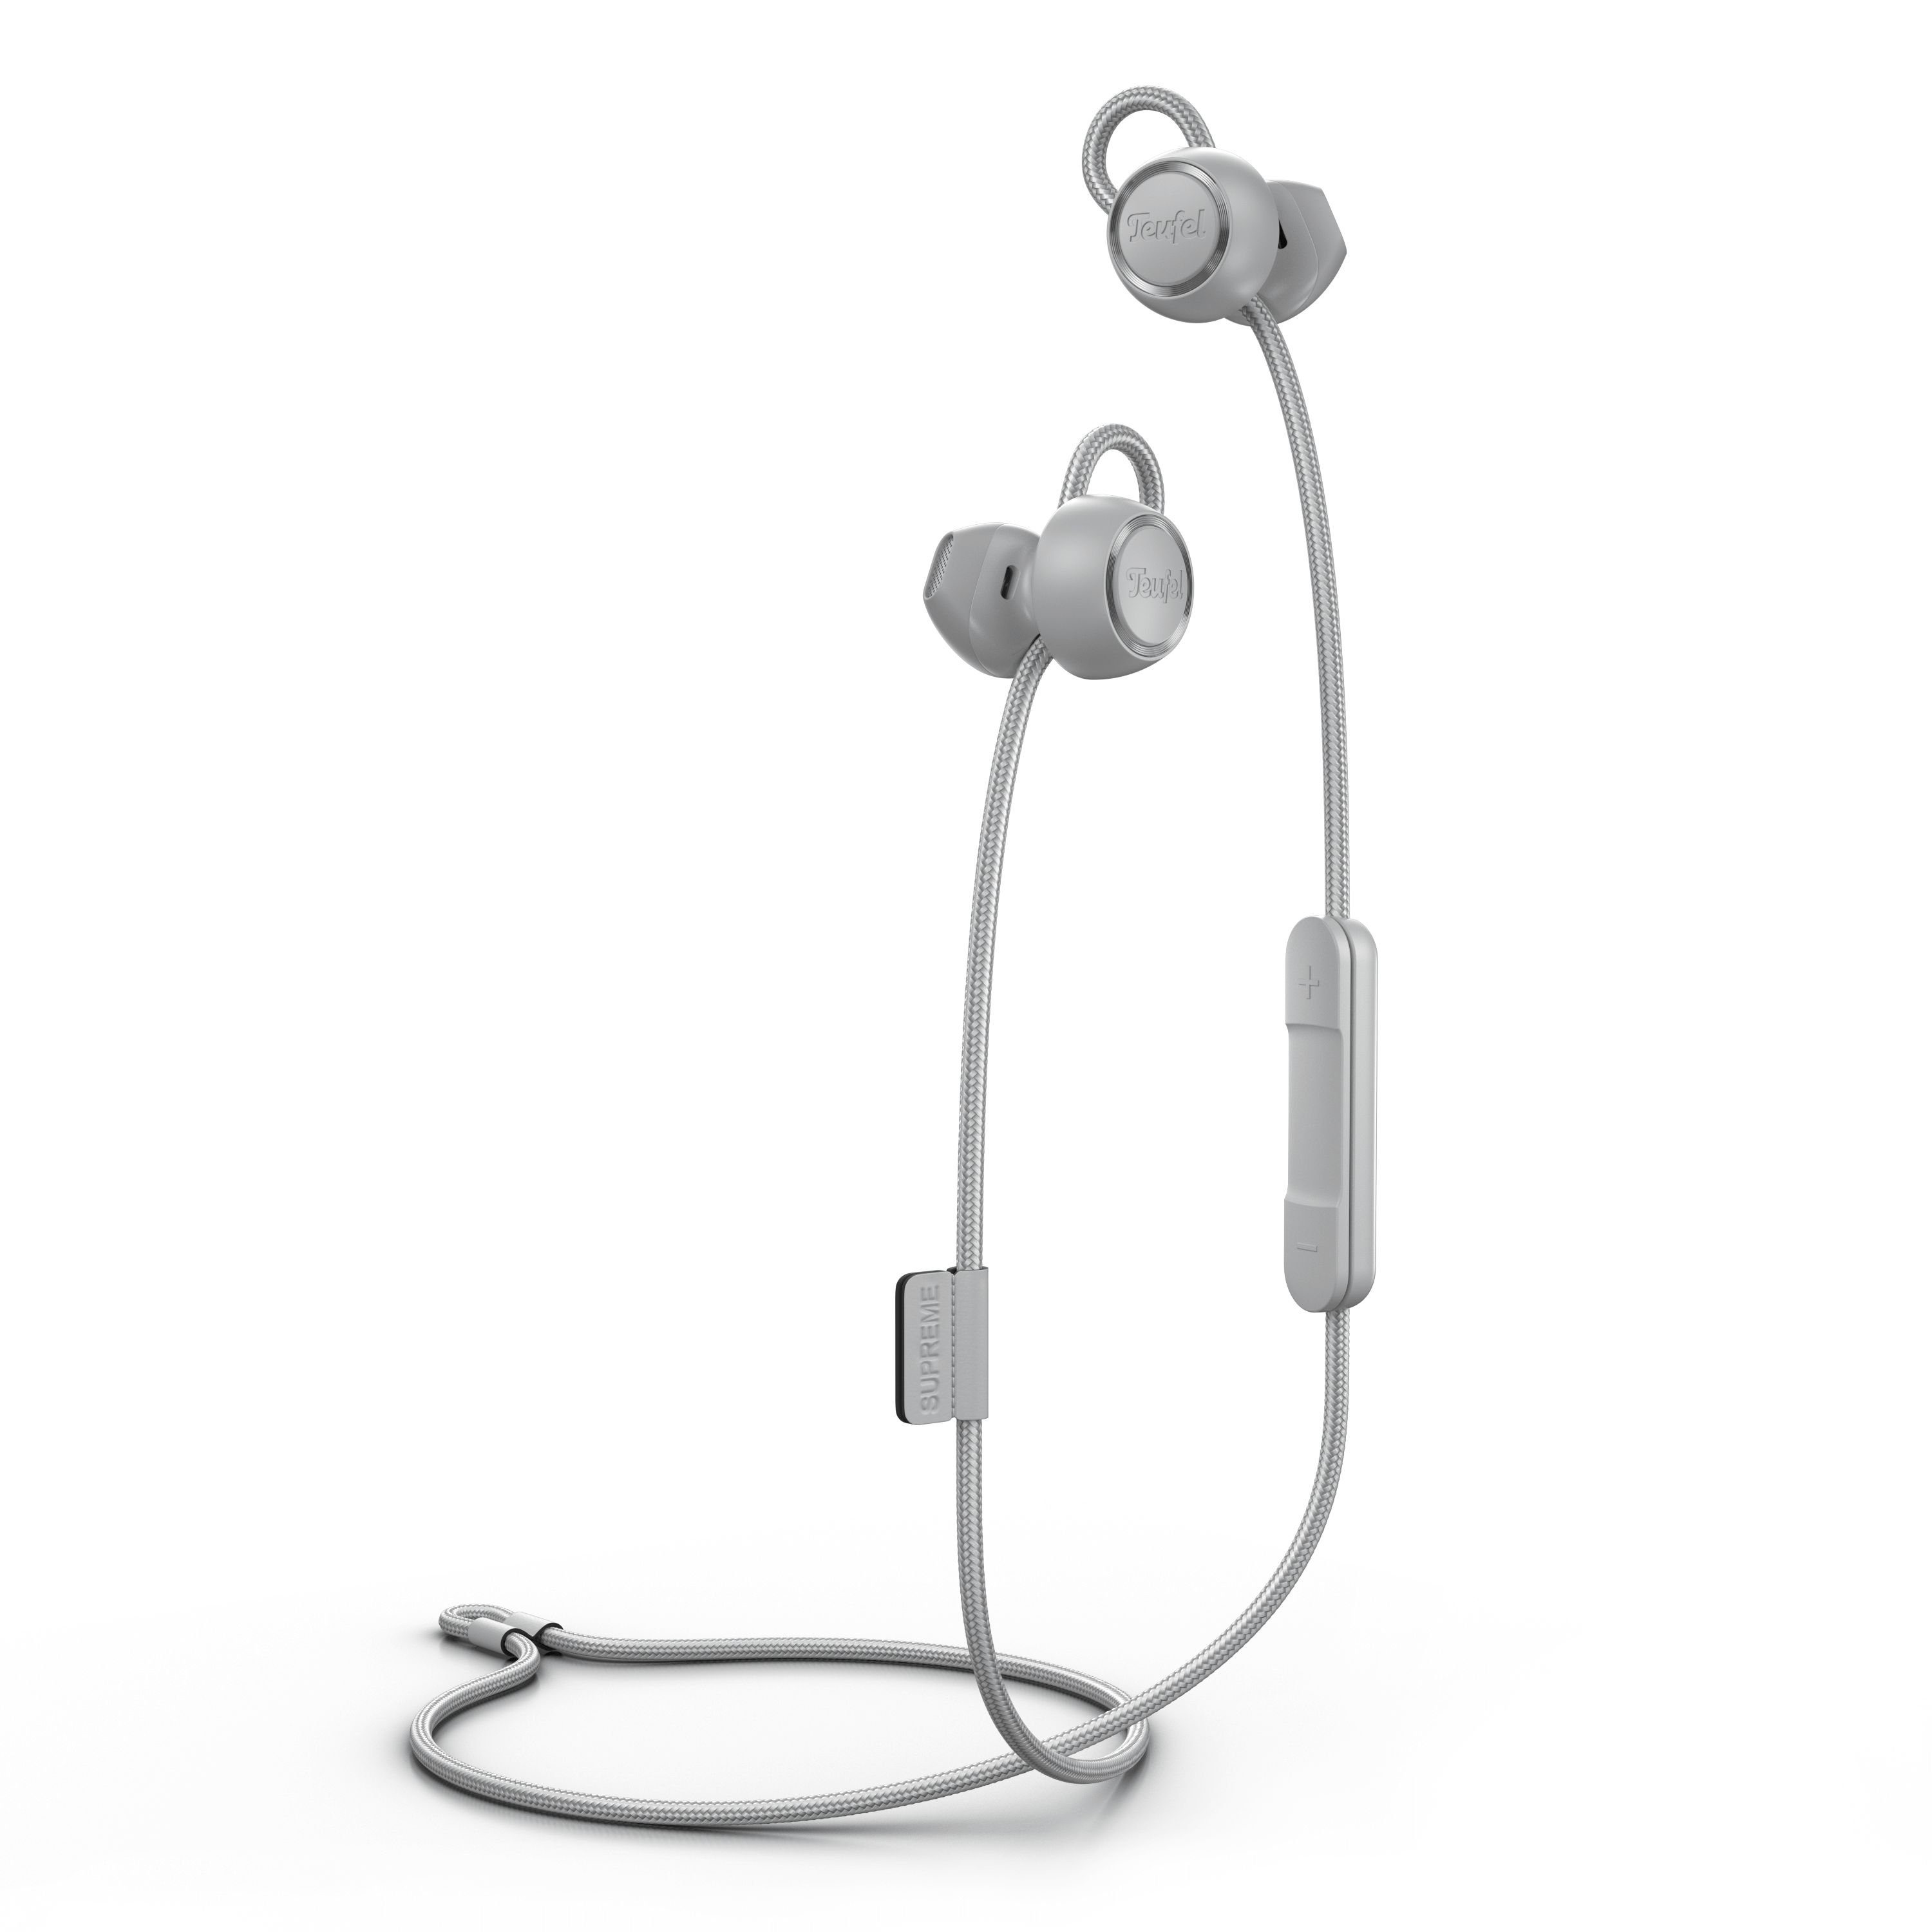 Teufel SUPREME IN Bluetooth-Kopfhörer (Freisprecheinrichtung mit Qualcomm, EQ, ShareMe- und weitere Einstellungen über die Teufel Headphones App möglich) Moon Gray